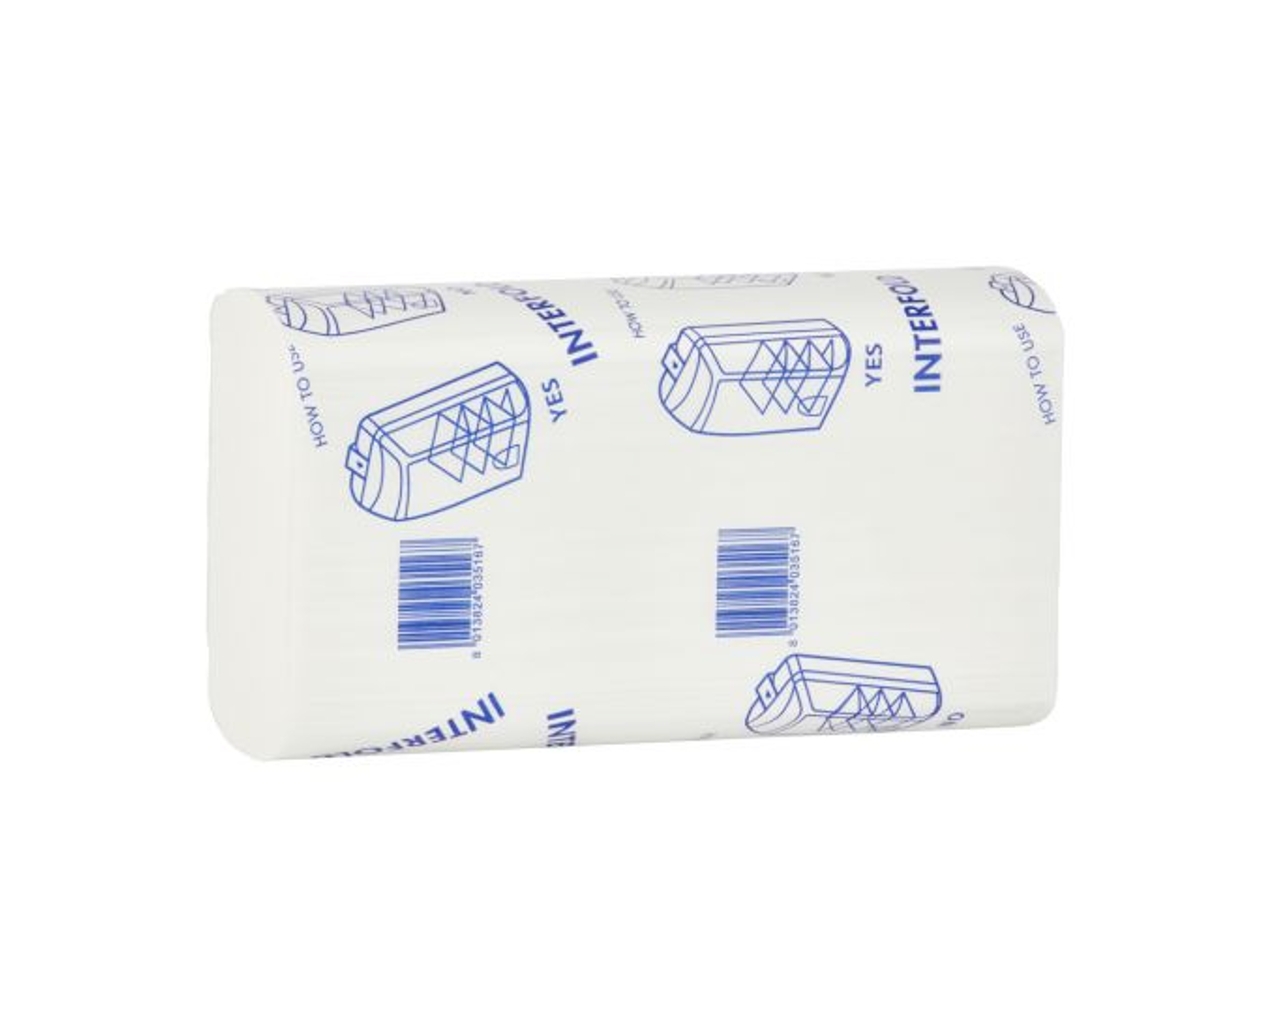 Ręczniki papierowe MERIDA TOP SLIM, białe, dwuwarstwowe, 3000 szt.